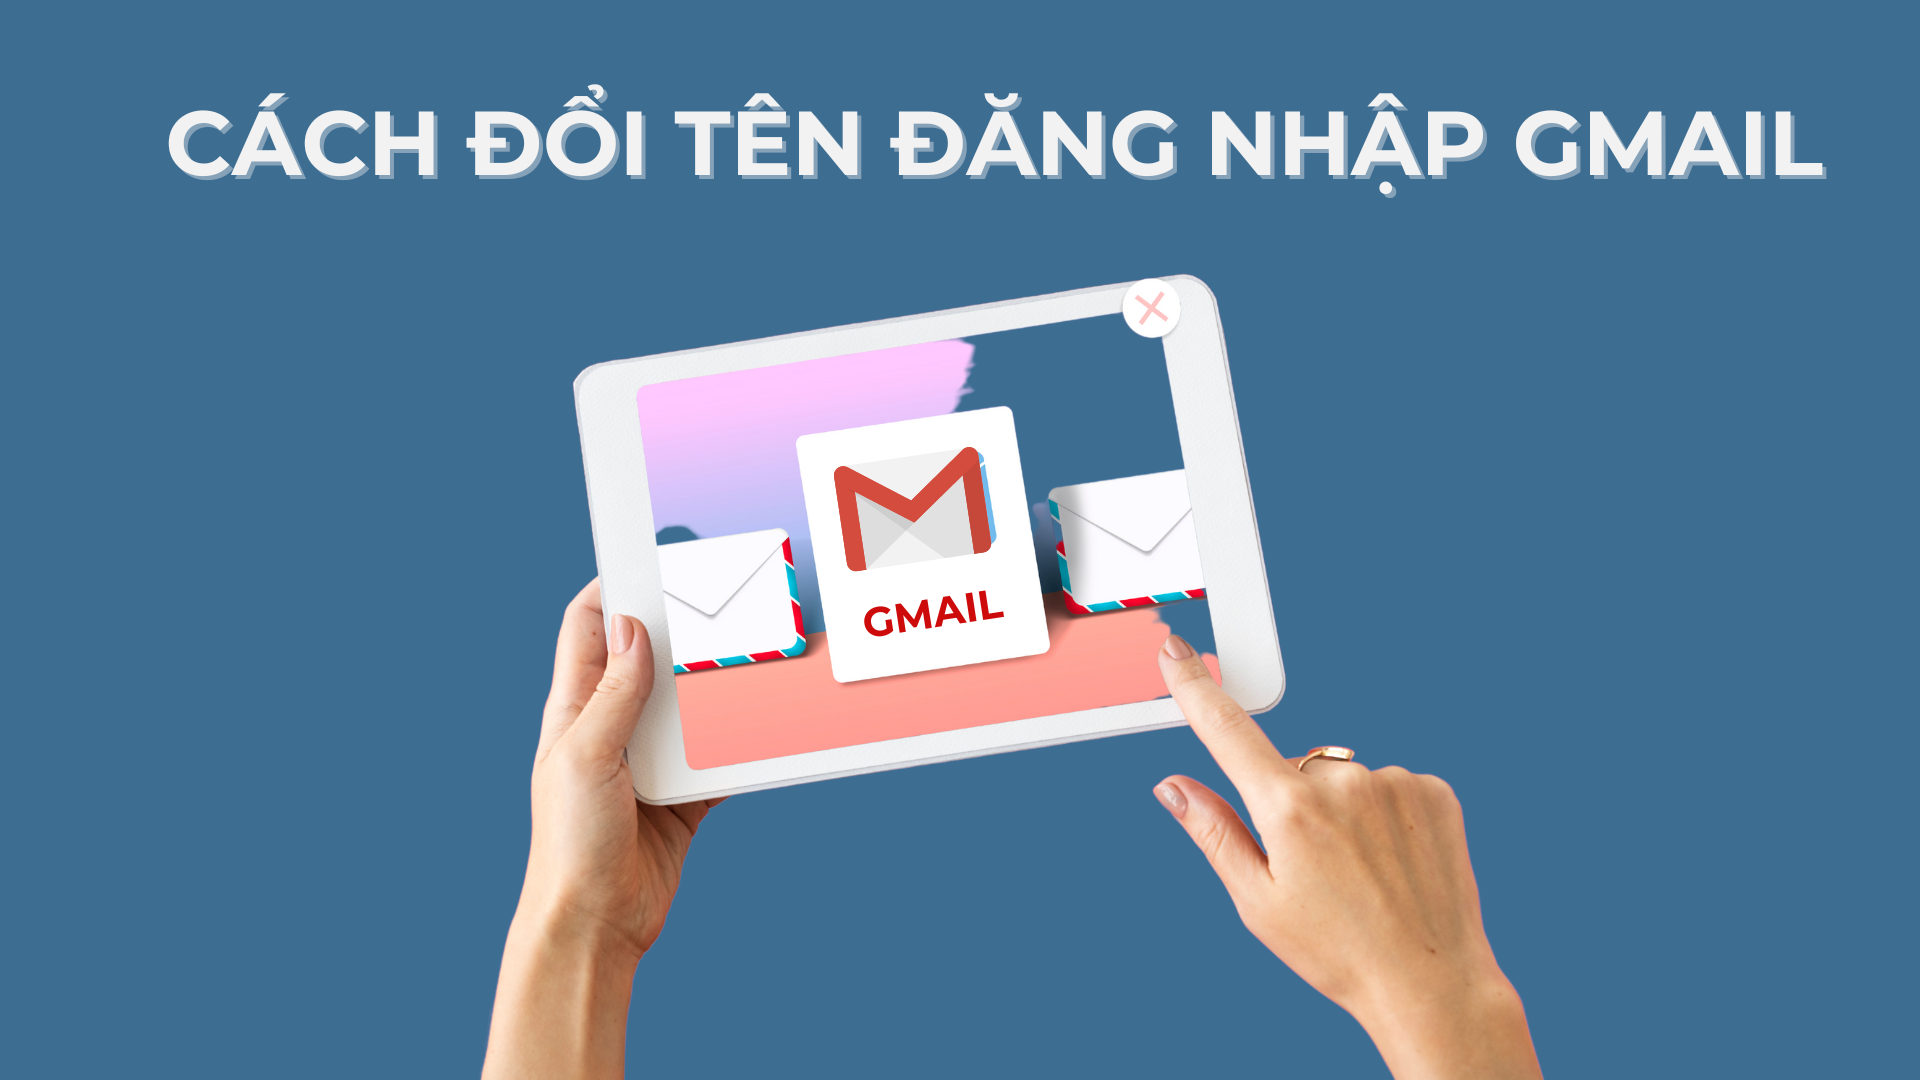 Hướng dẫn cách đổi tên đăng nhập Gmail trên mọi thiết bị